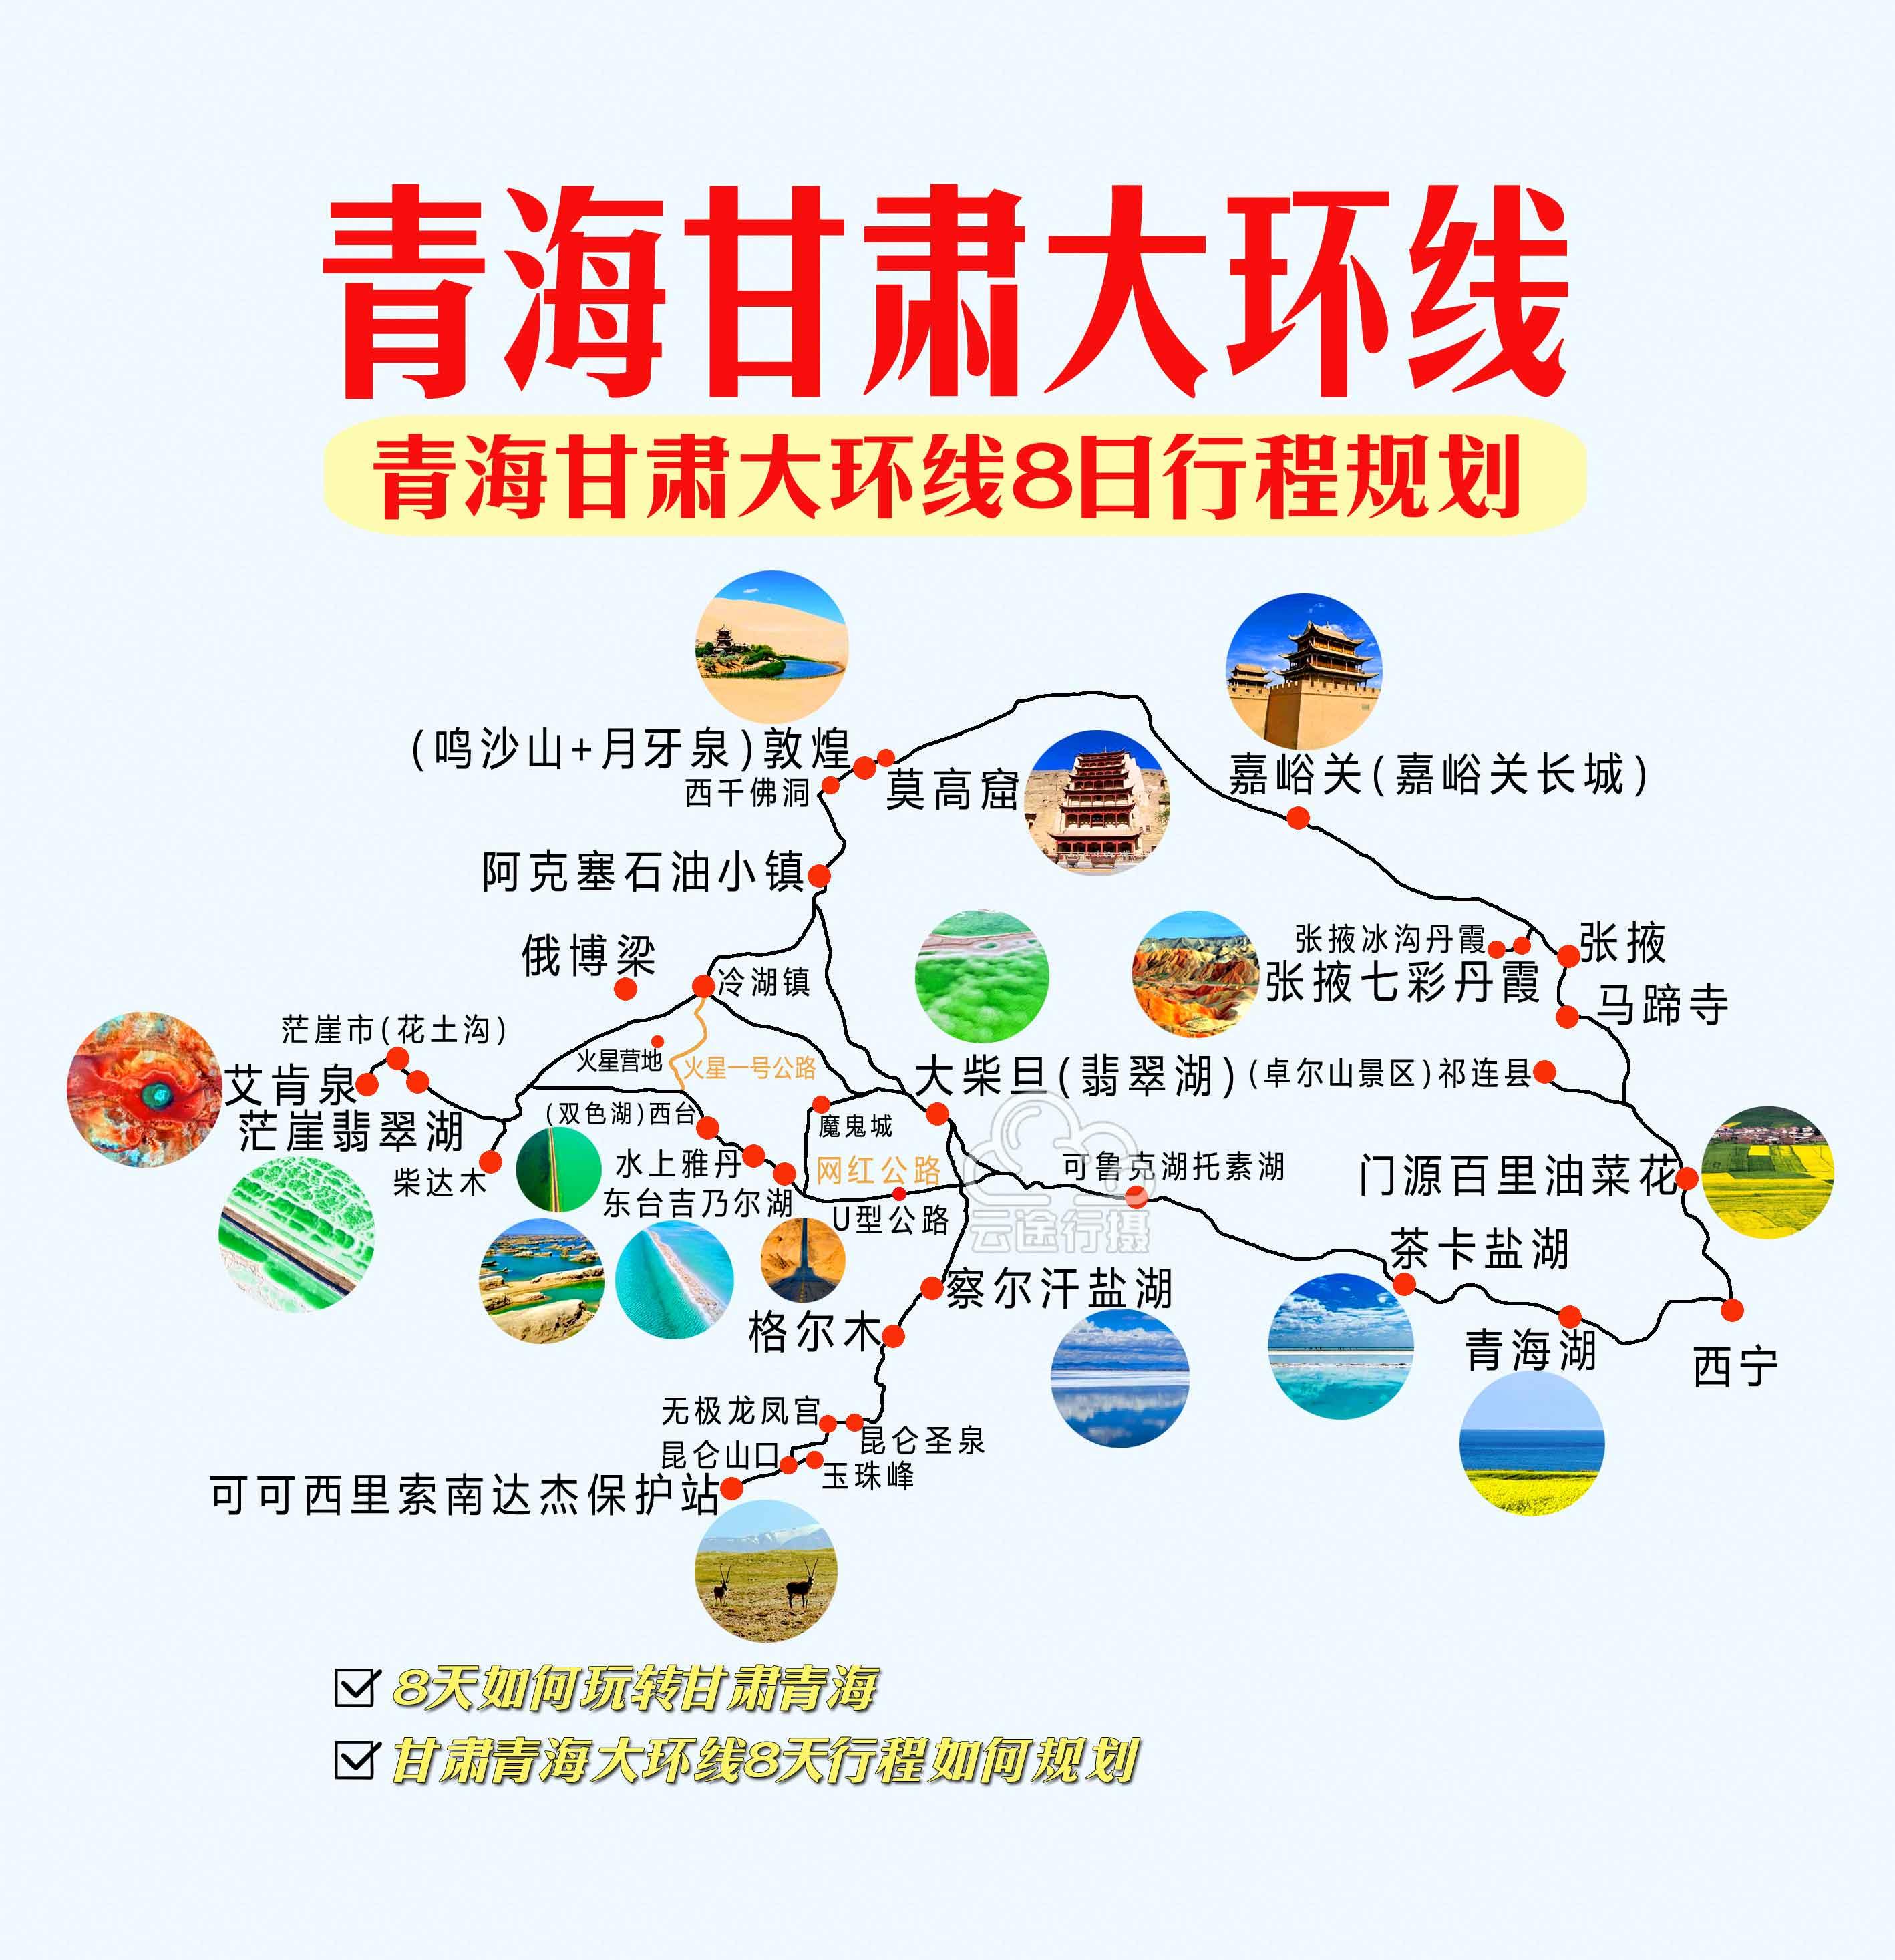 西宁甘肃大环线线路图图片